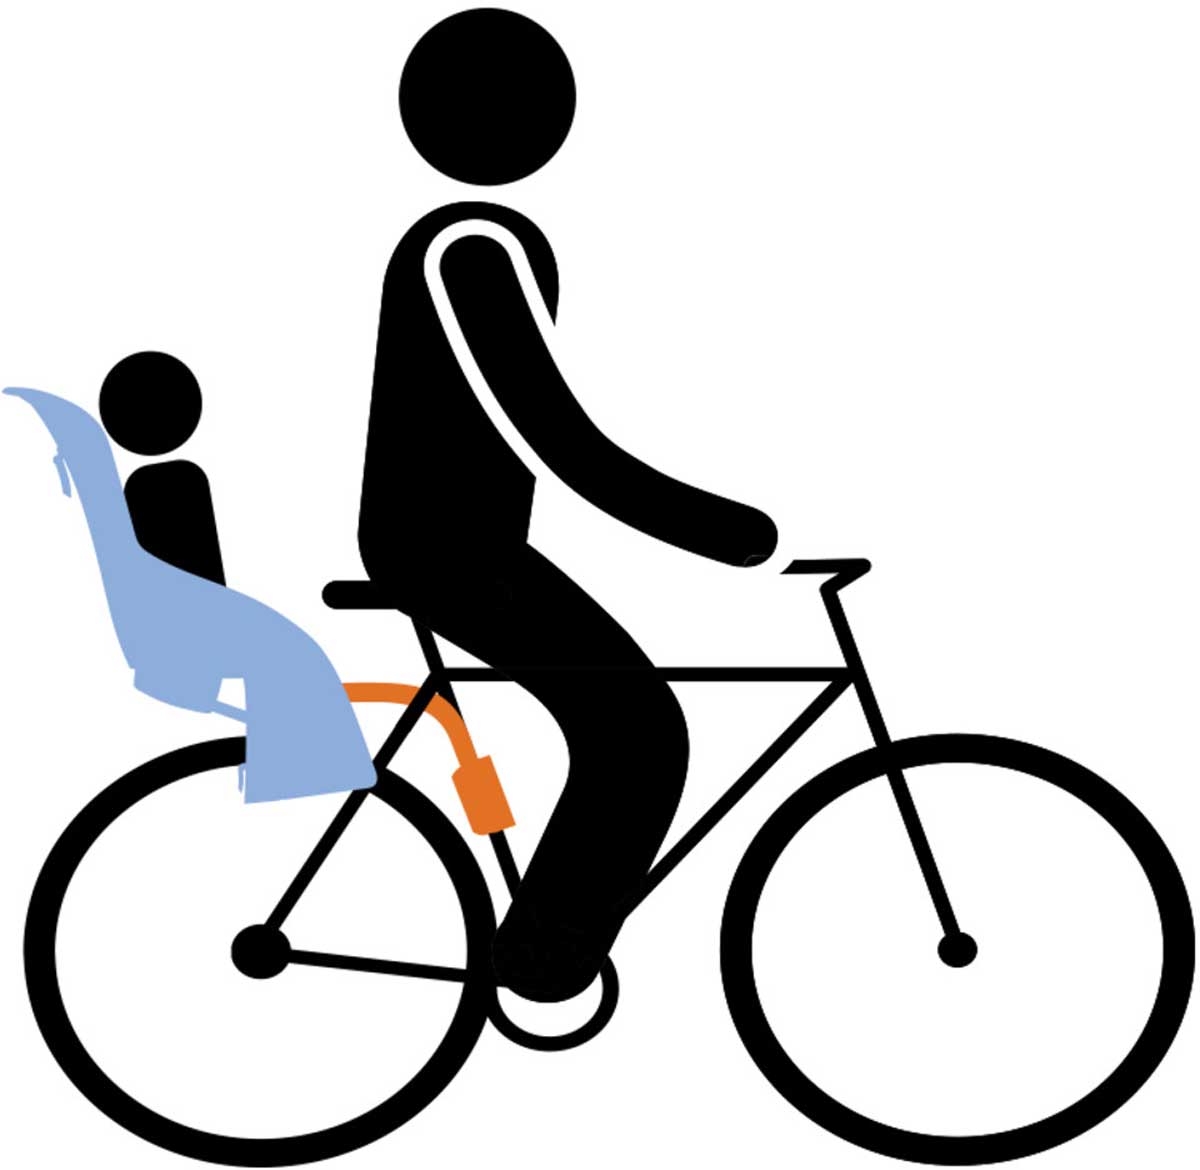 Kids' bicycle seat